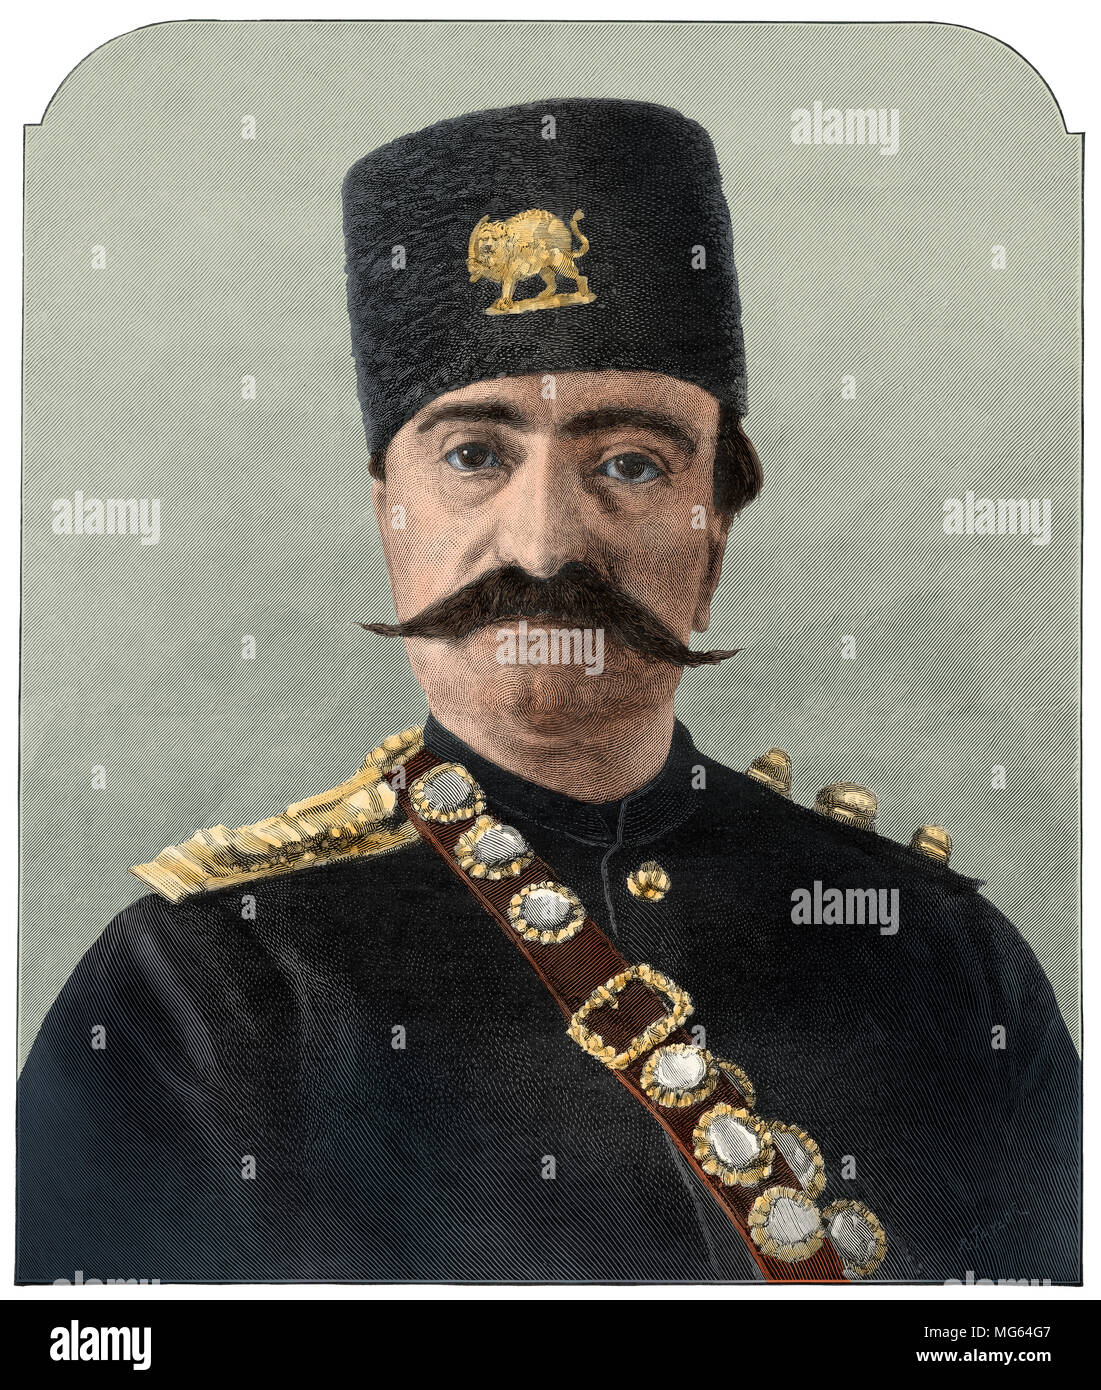 Naser al-Din, Shah d'Iran, 1880. Gravure sur bois couleur numérique d'une photographie Banque D'Images